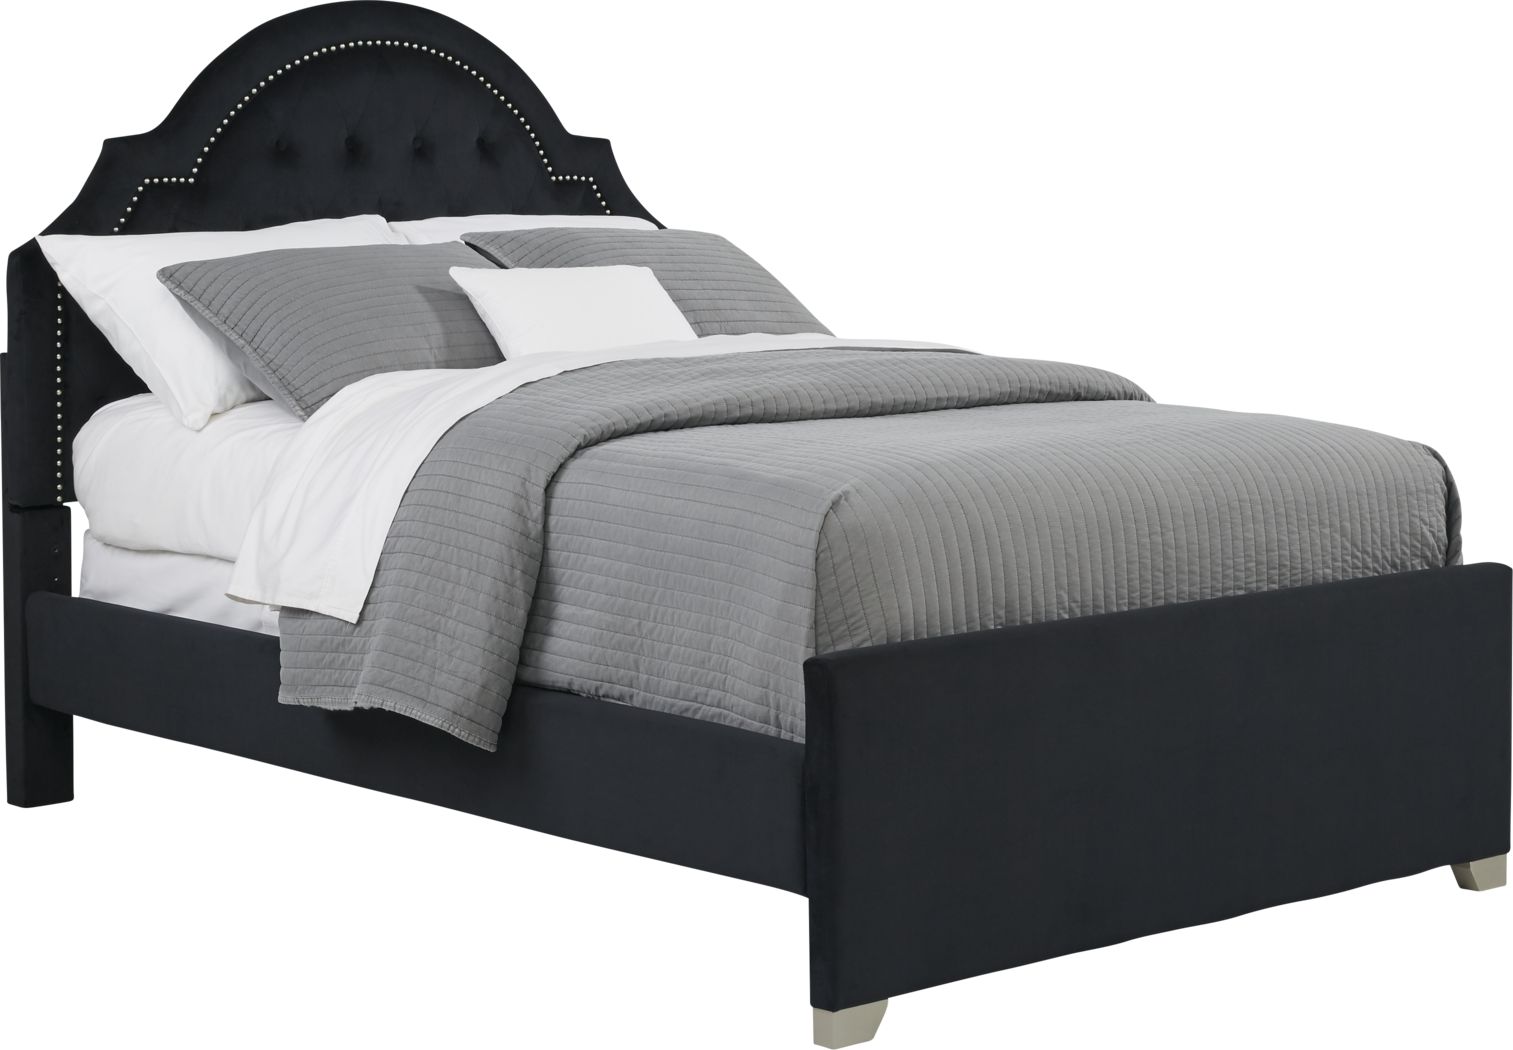 Black Full Beds